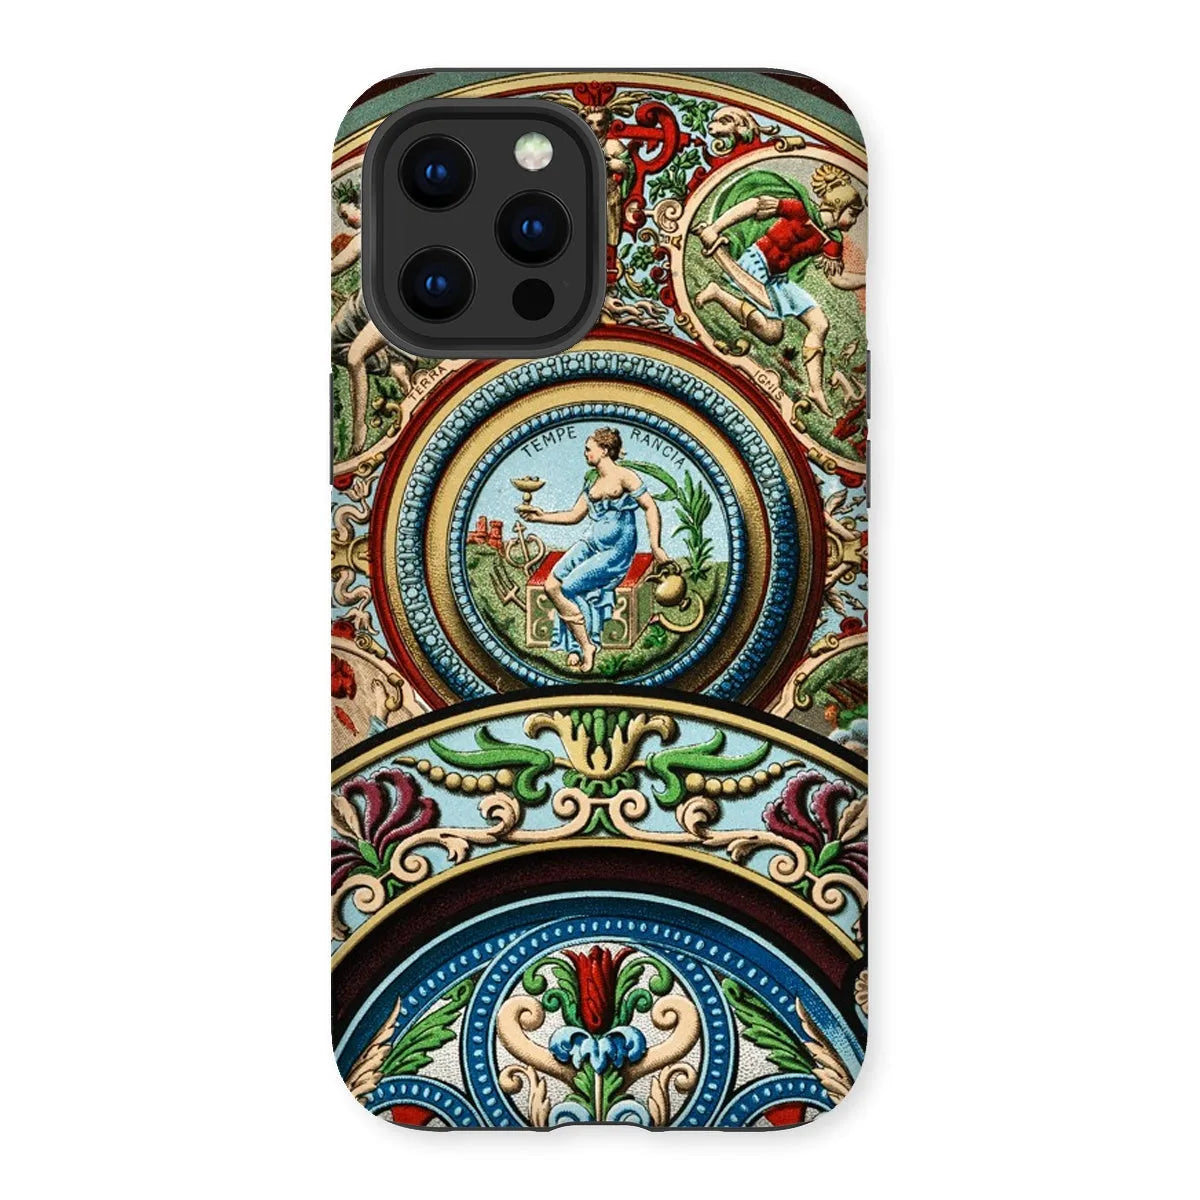 Renaissance Pattern By Auguste Racinet Tough Phone Case - Iphone 12 Pro Max / Matte - Aesthetic Art